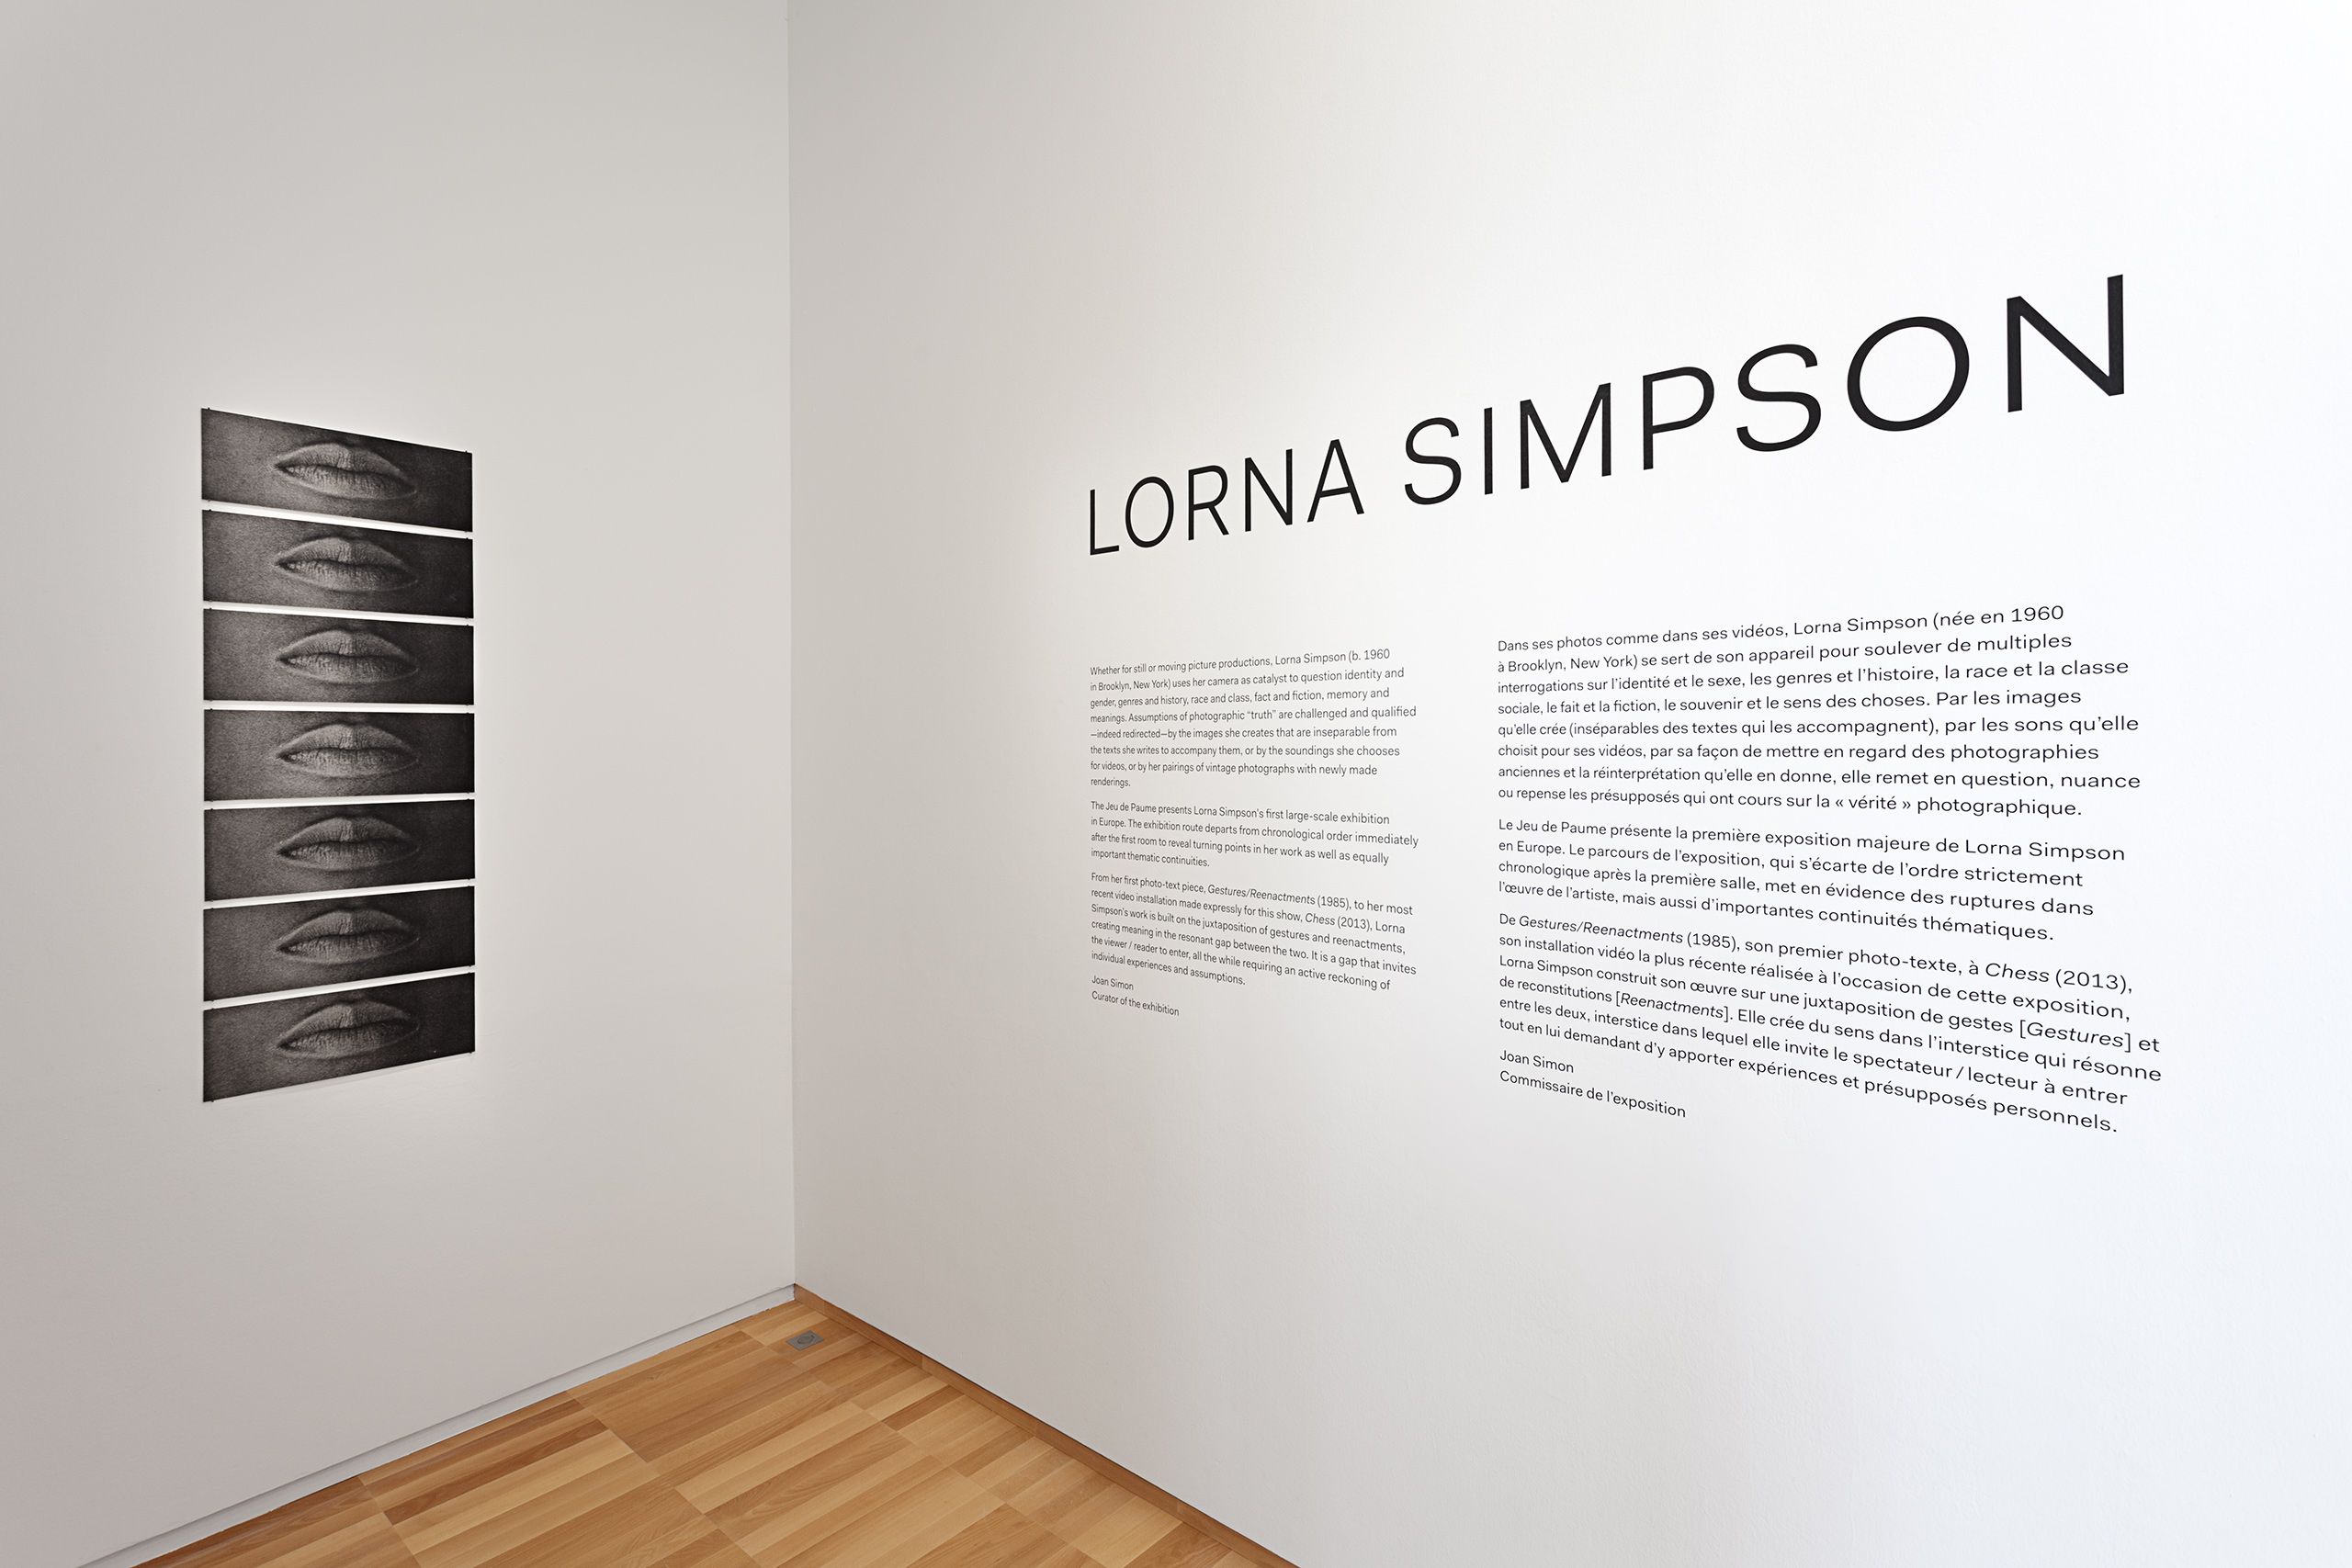 "Lorna Simpson", Jeu de Paume, Paris, France 2013